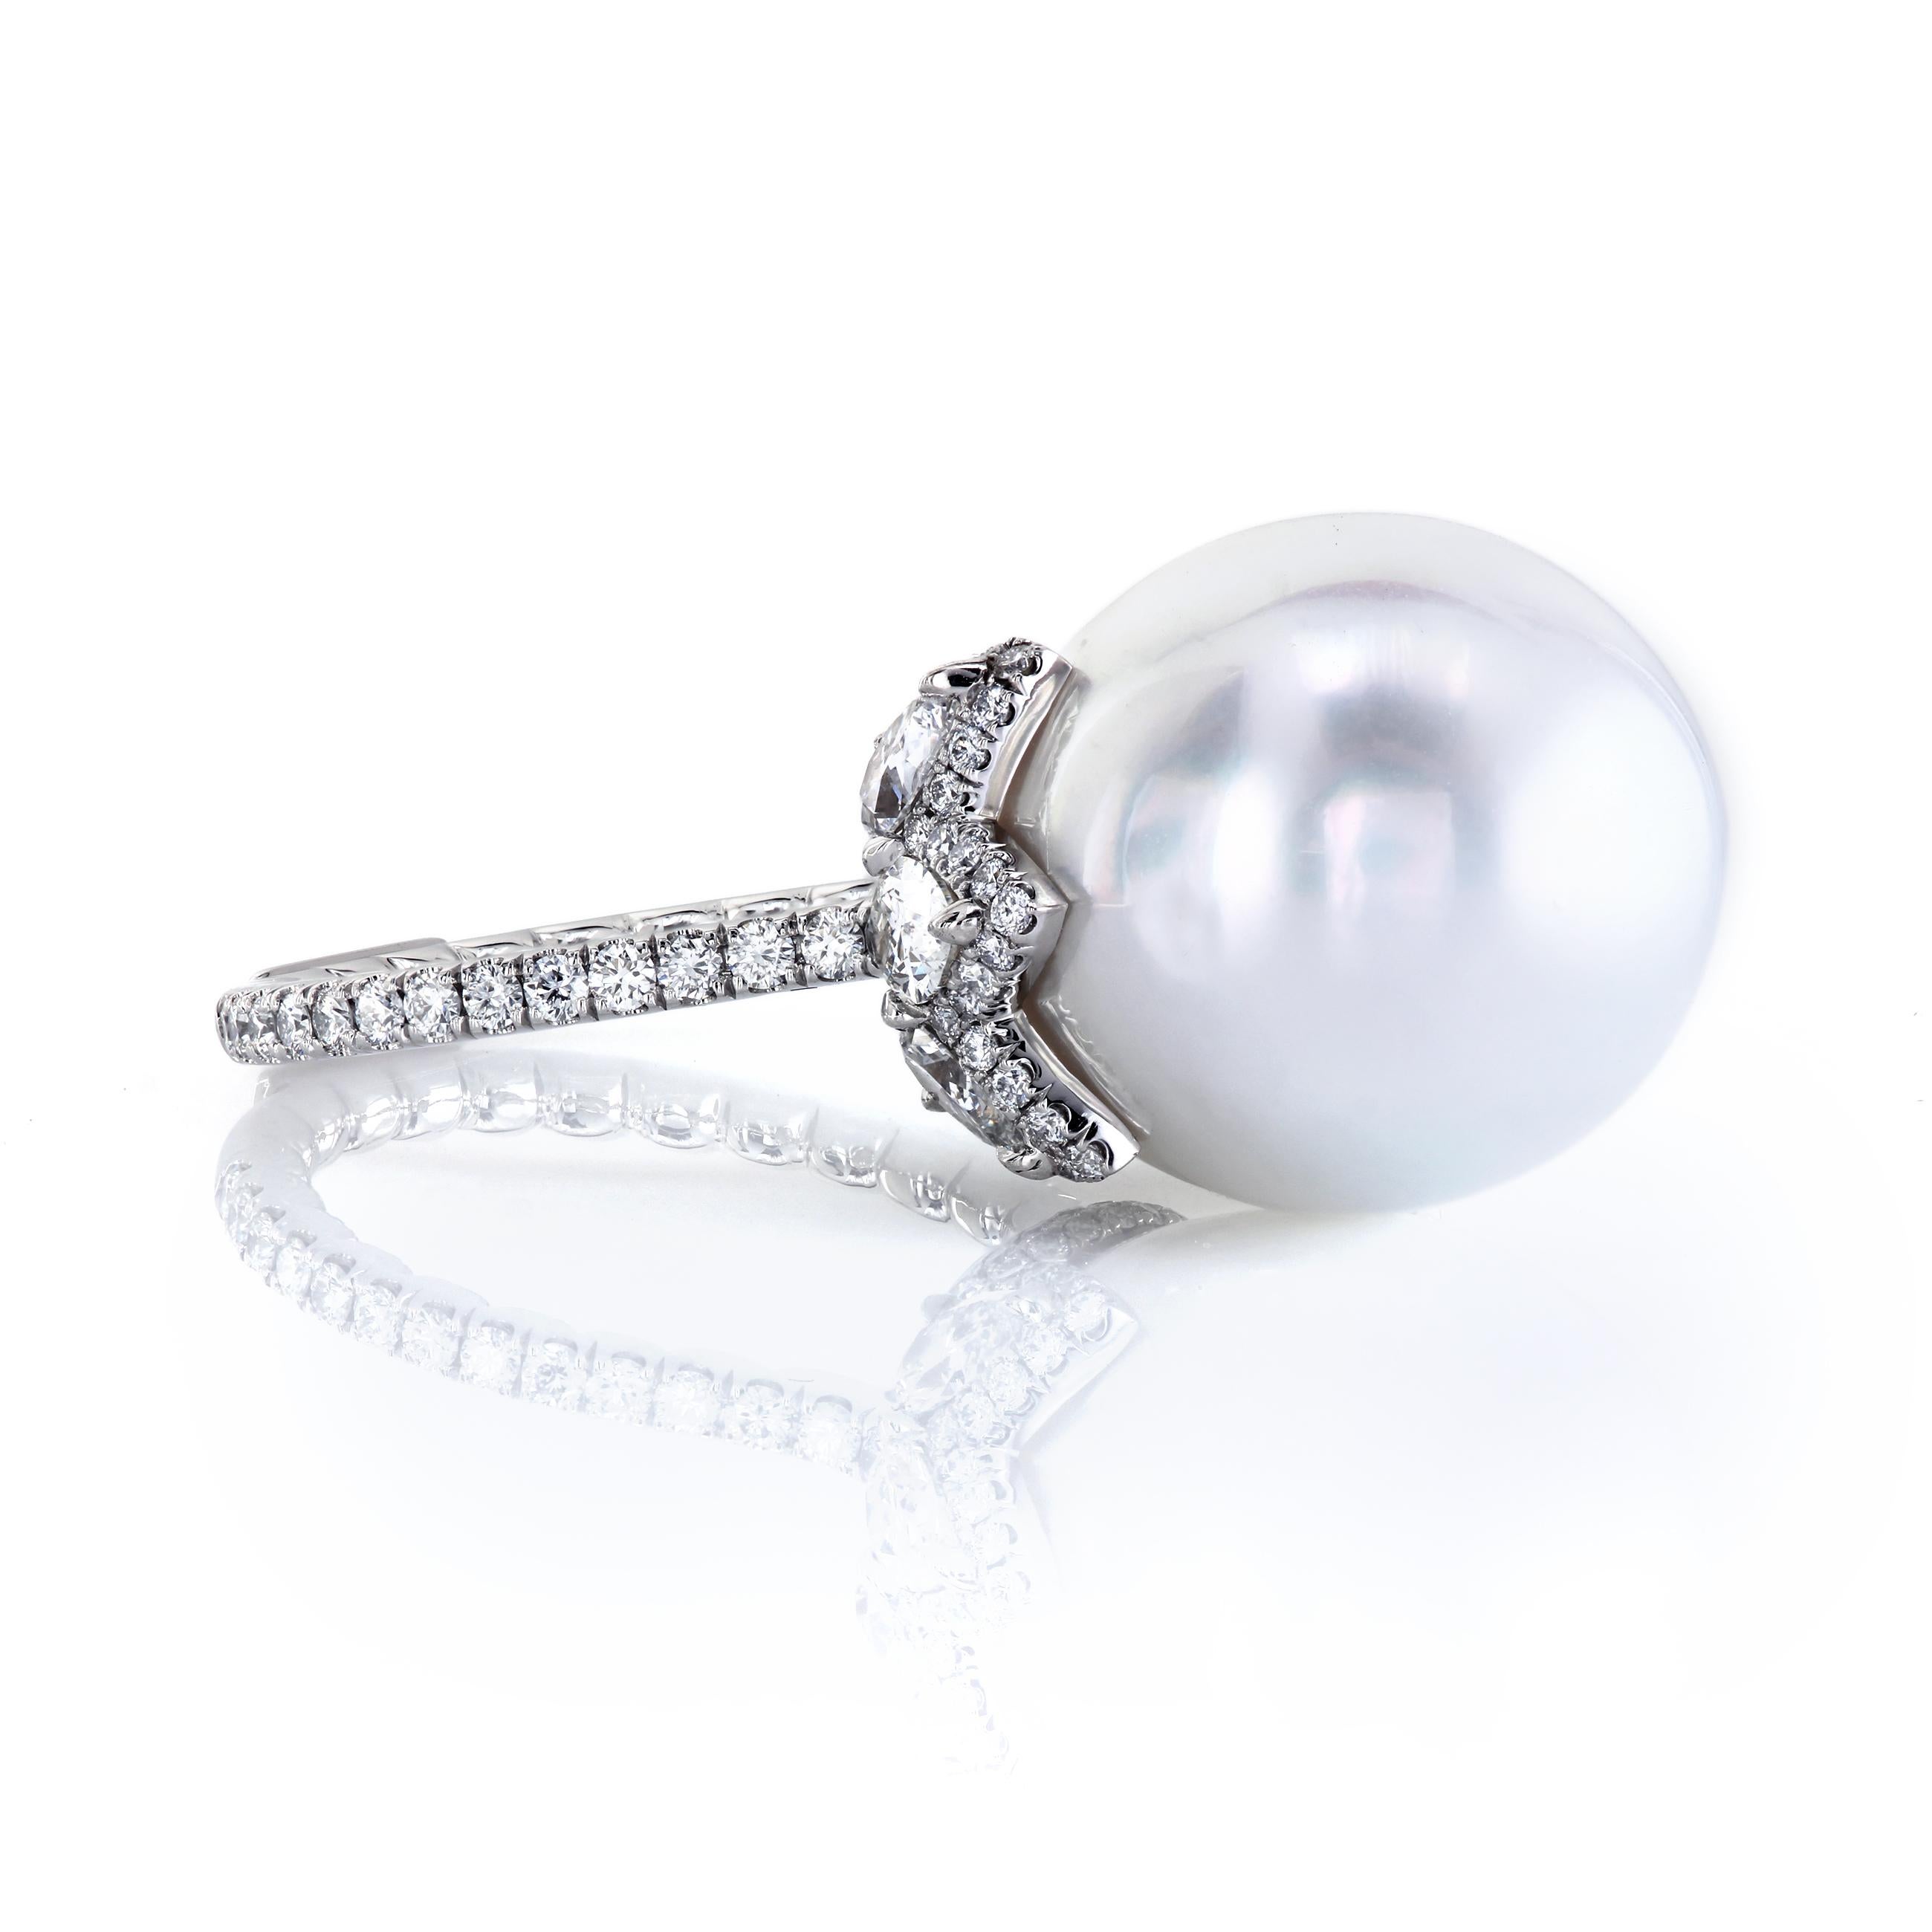 Superbe et élégante bague en platine. La belle combinaison de la perle légèrement allongée et du feu des diamants sera admirée et chérie pendant des années. Les perles symbolisent l'amour, le succès et le bonheur. Regardez autour de vous -